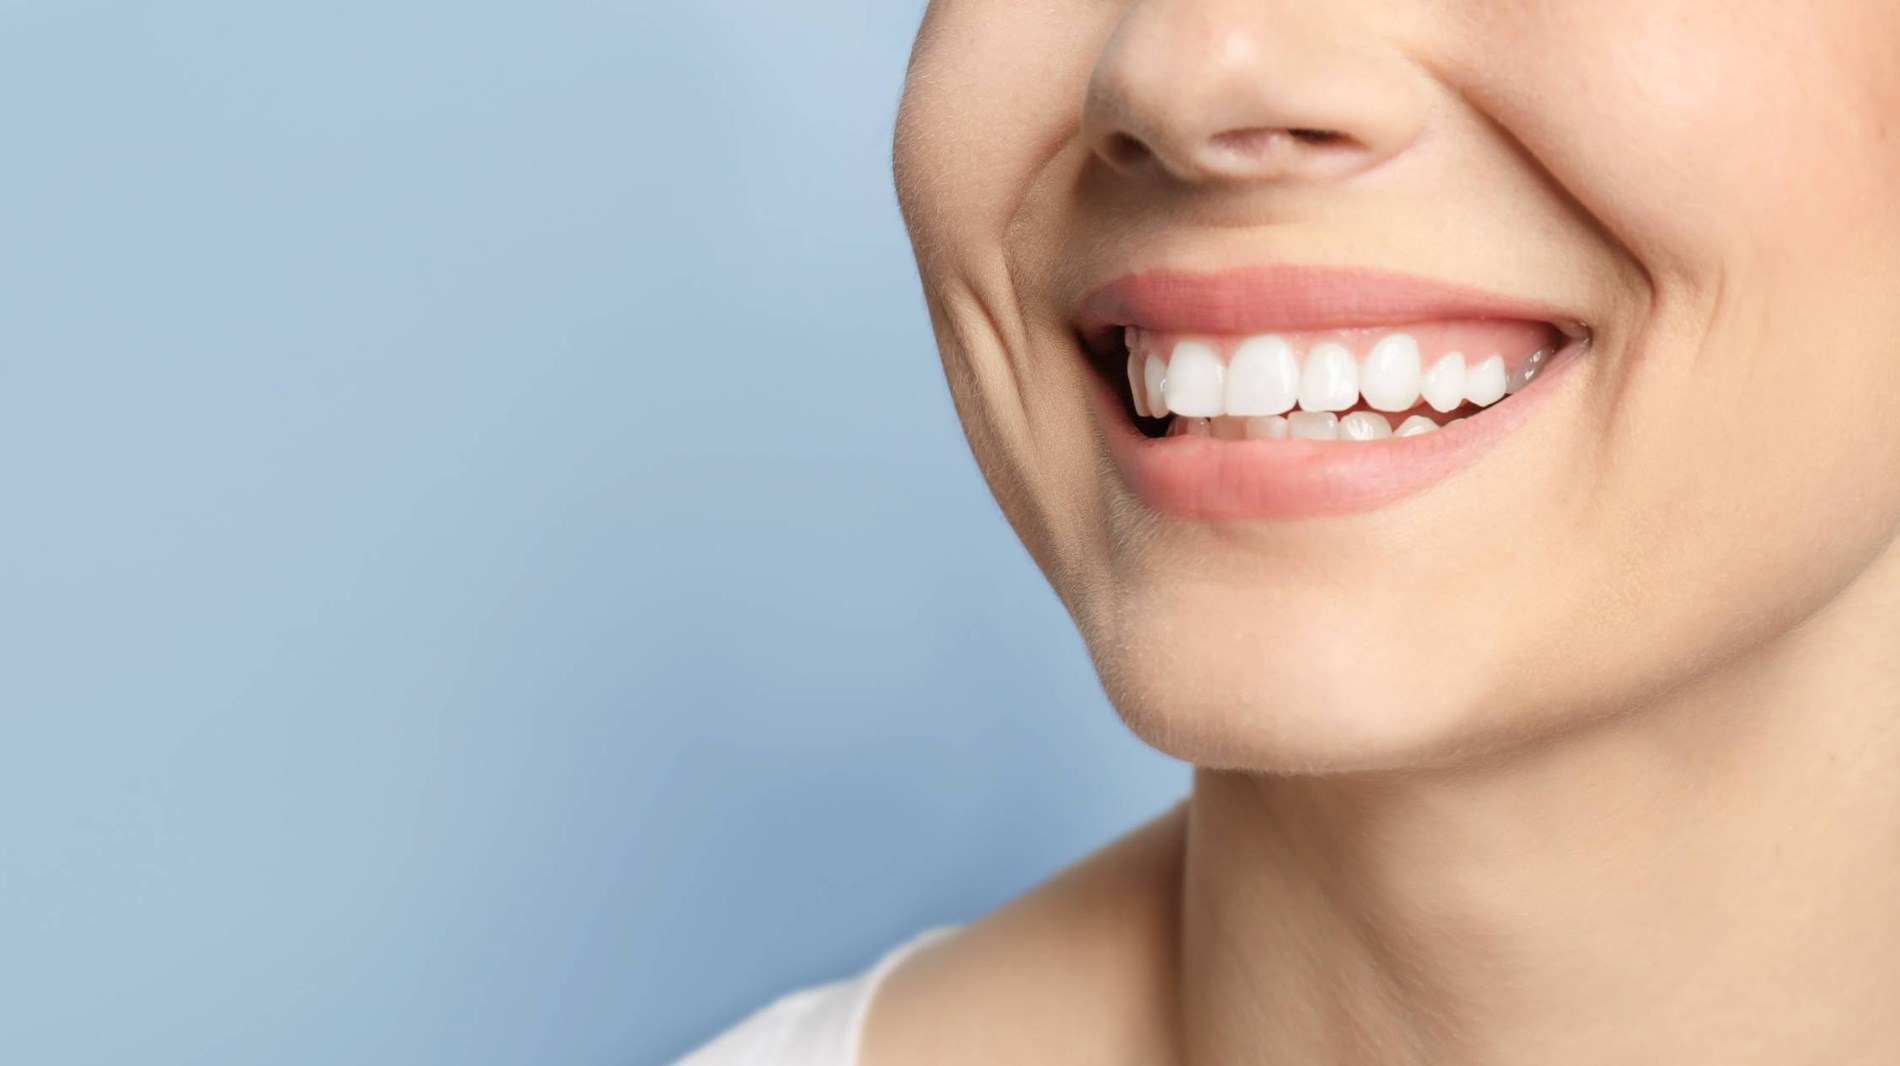 5 علاجات منزلية فعالة لأسنان بيضاء لؤلؤية(زهرةالخليج)